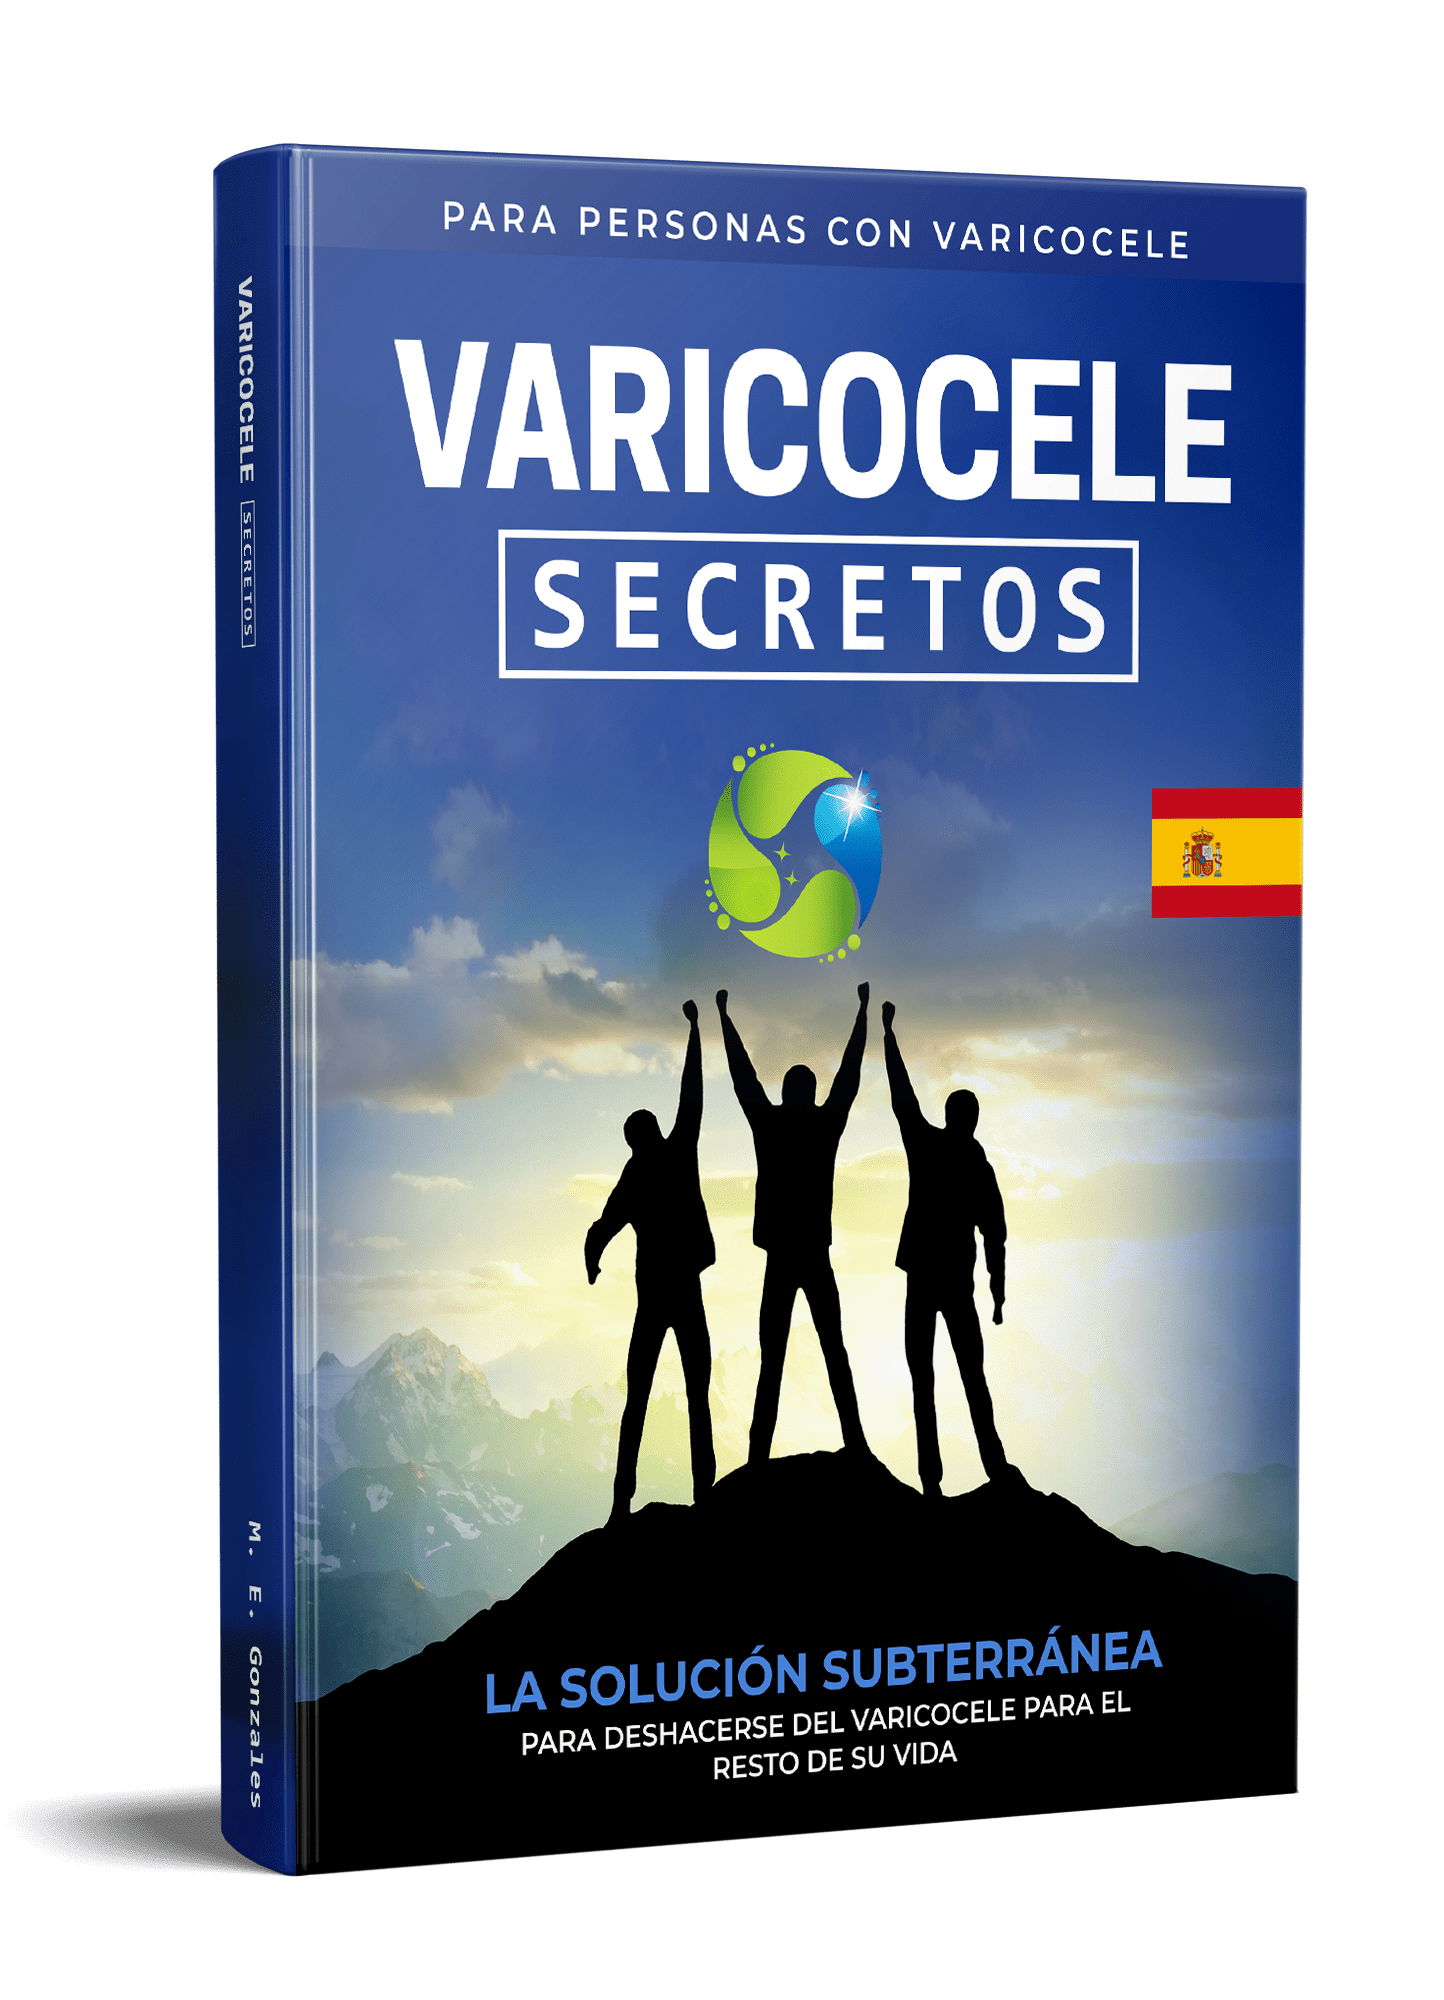 Varicocele Secretos spanska E-Libro